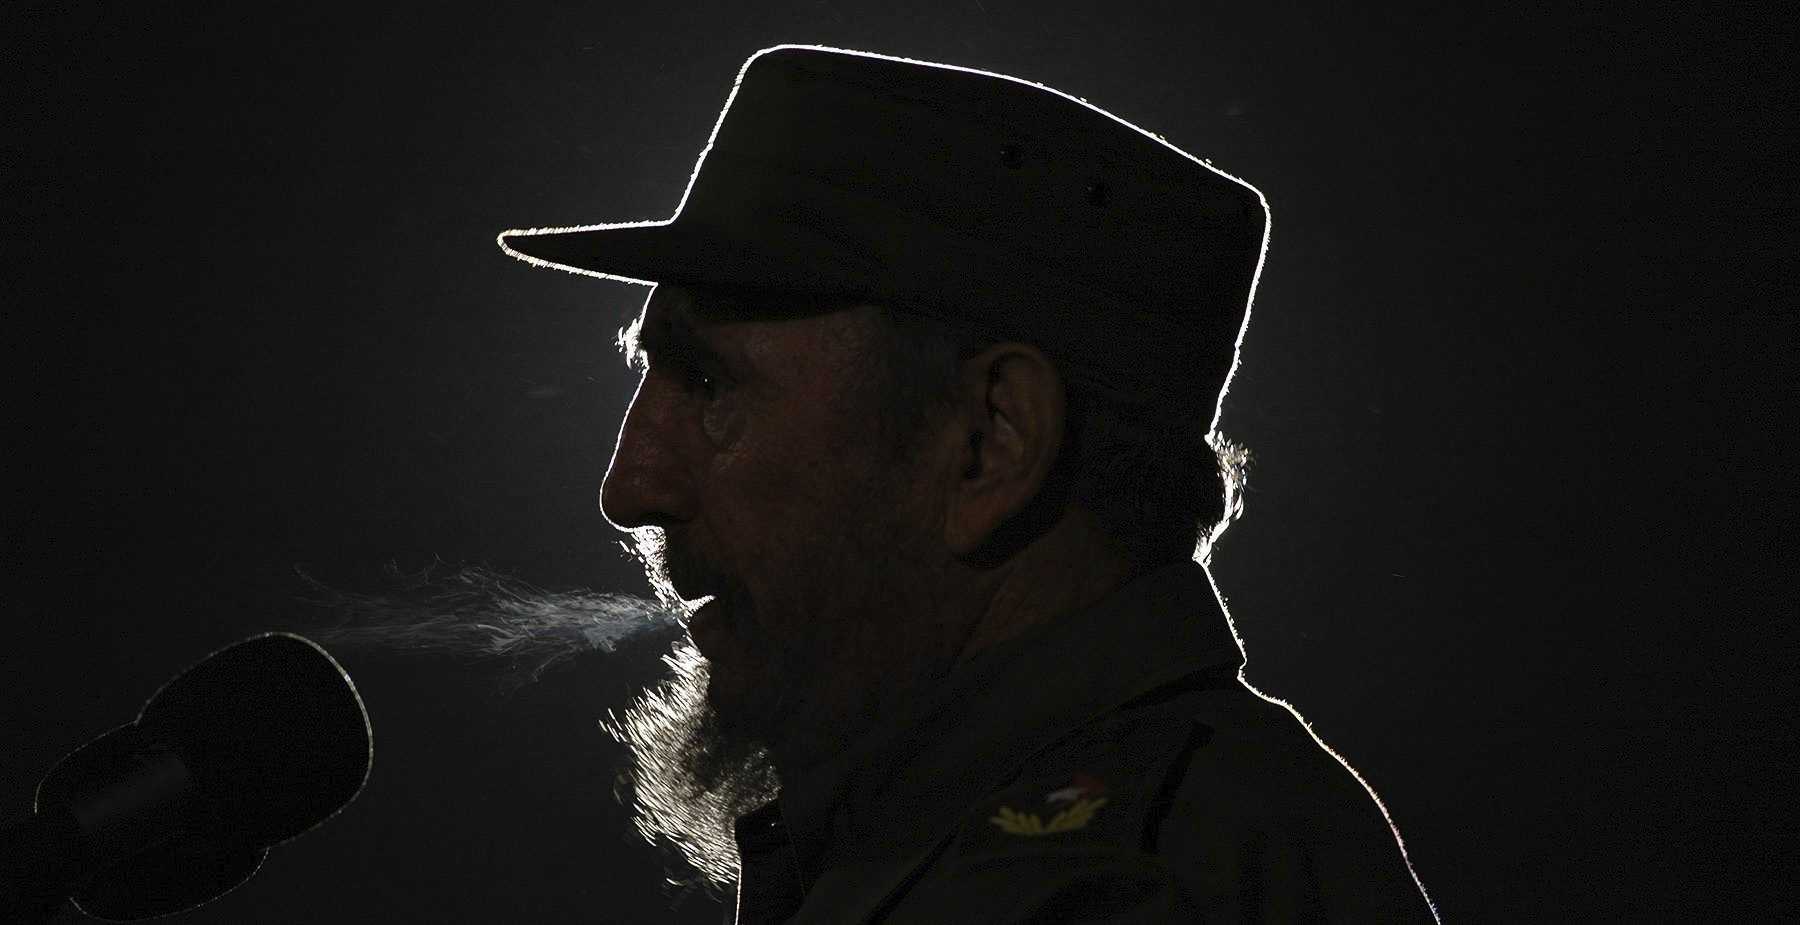 "La historia me absolverá" y otras frases históricas de Fidel Castro